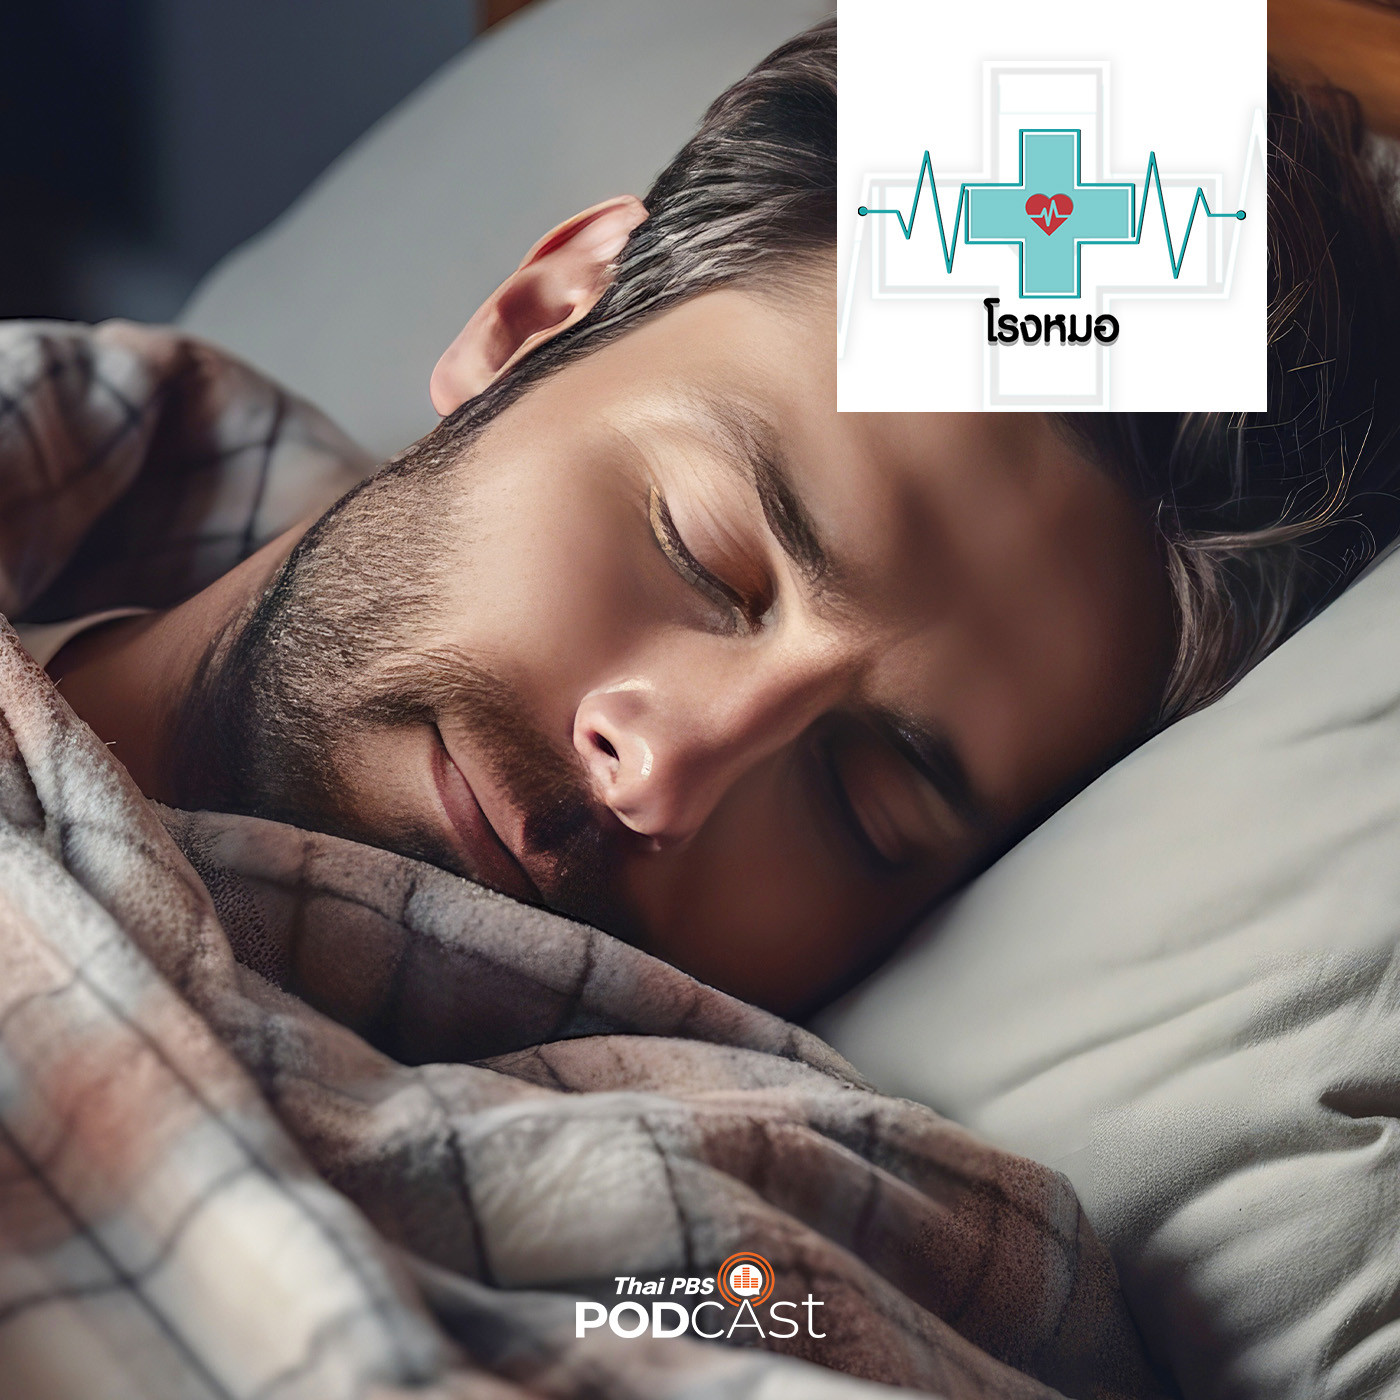 โรงหมอ EP. 887: นอนให้ดี มีคุณภาพ ตื่นแล้วสดชื่น นอนอย่างไร